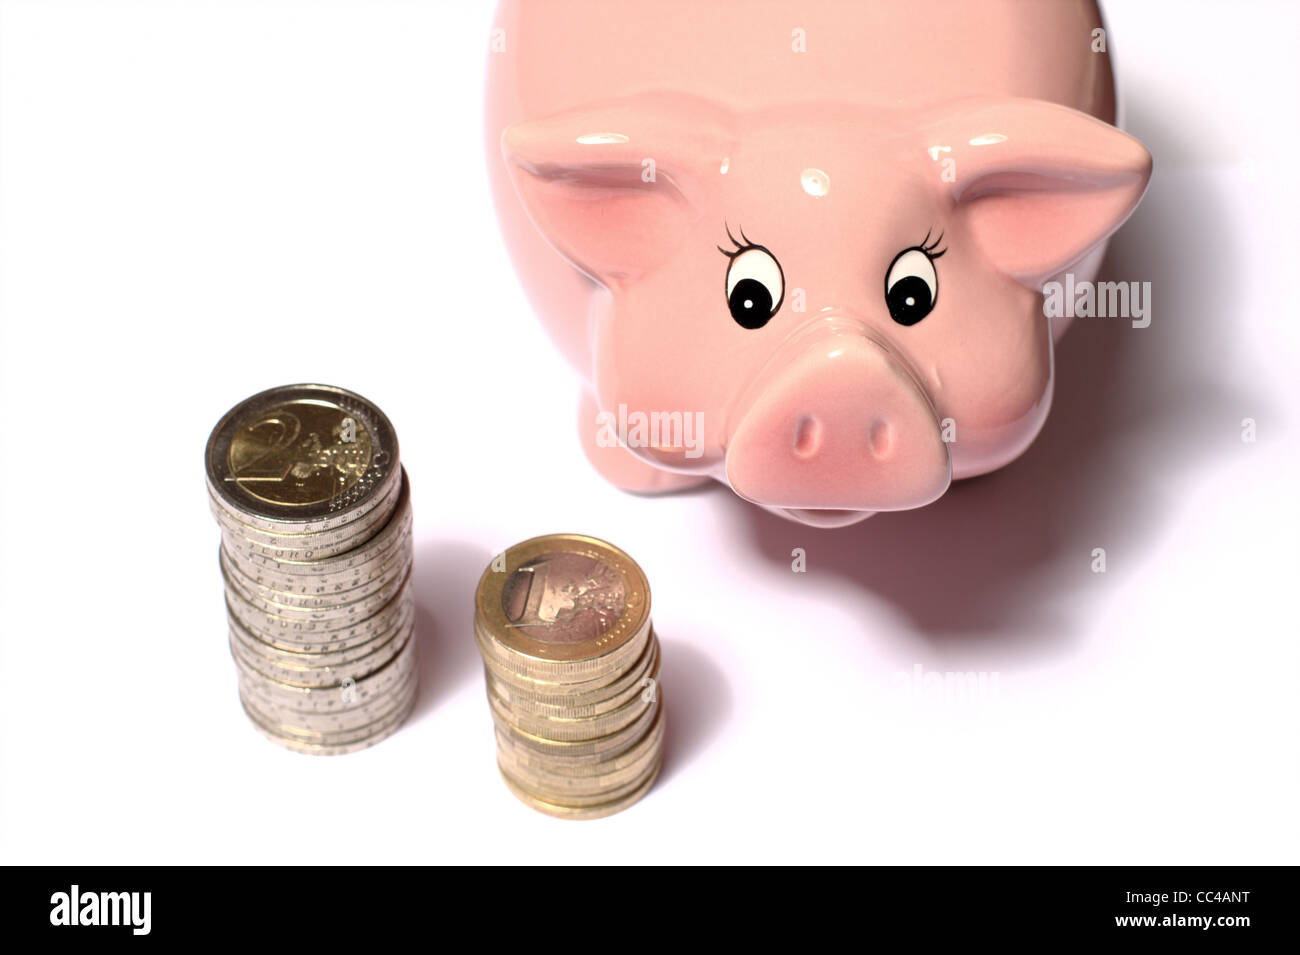 Monete in euro impilate su un tavolo con salvadanaio rosa per risparmiare  denaro. ideale per layout di siti web e riviste